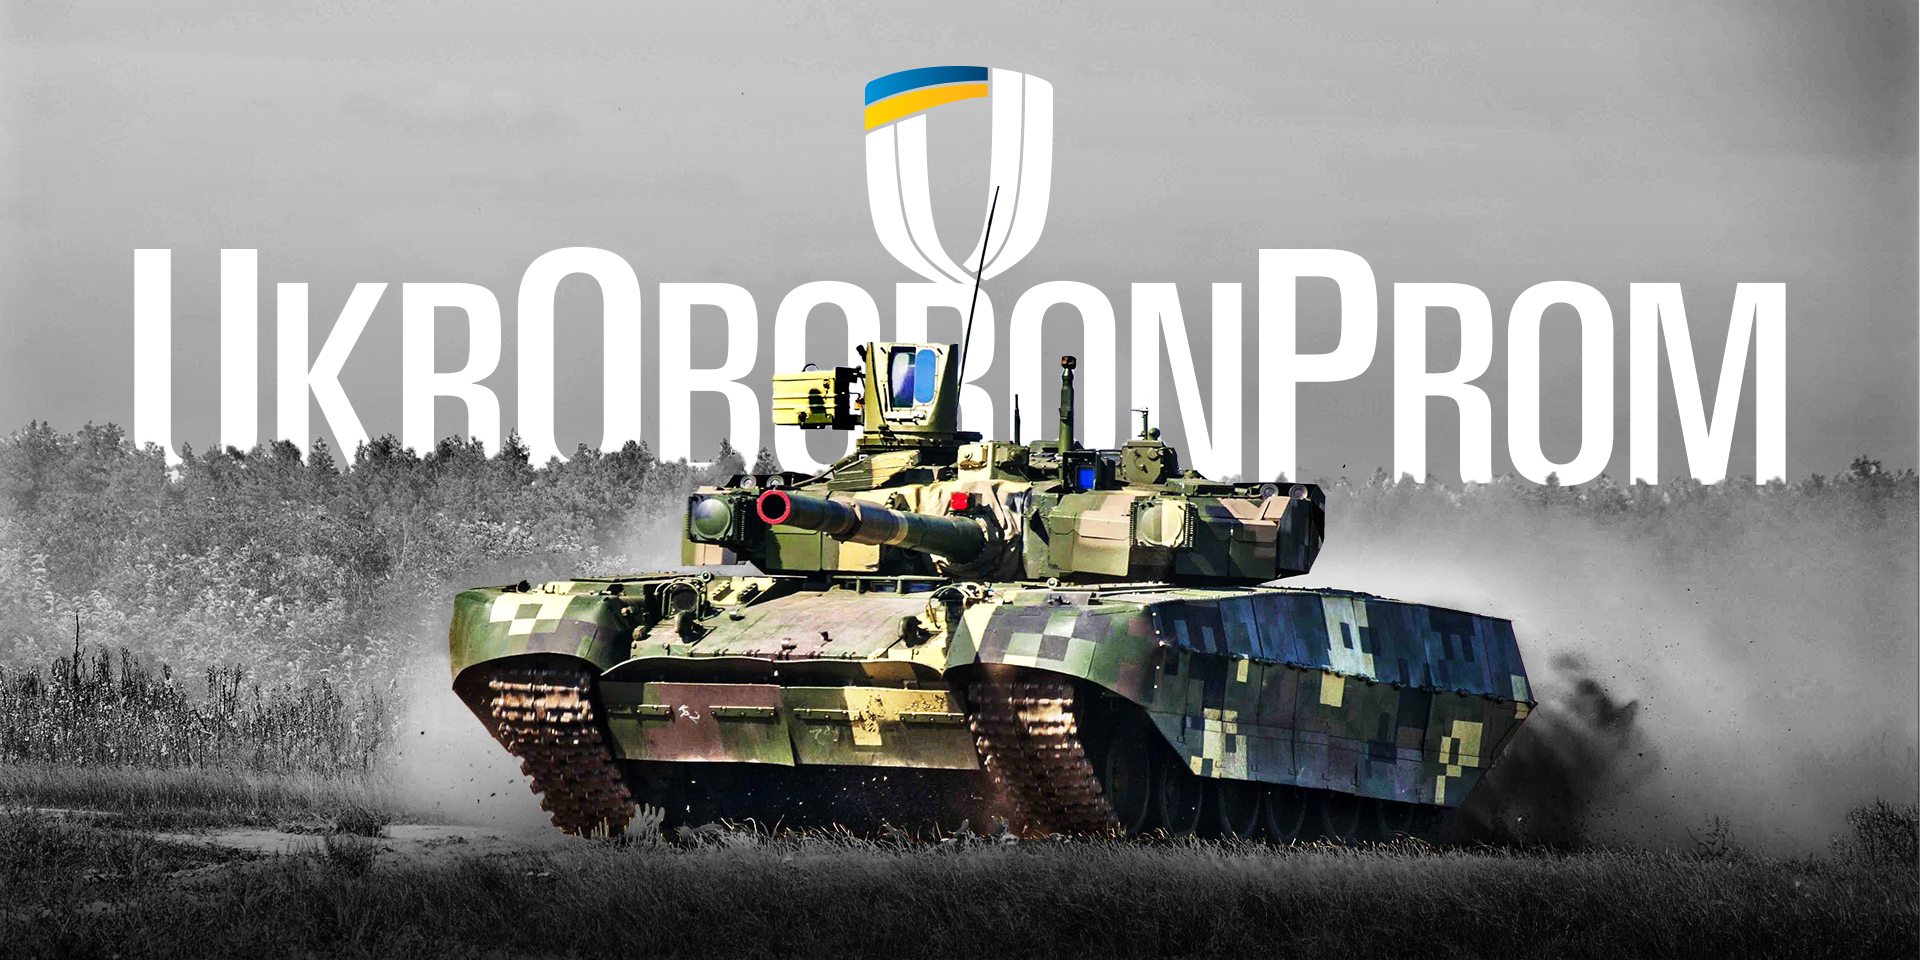 Україна вироблятиме важке озброєння та військову техніку з шістьма країнами НАТО